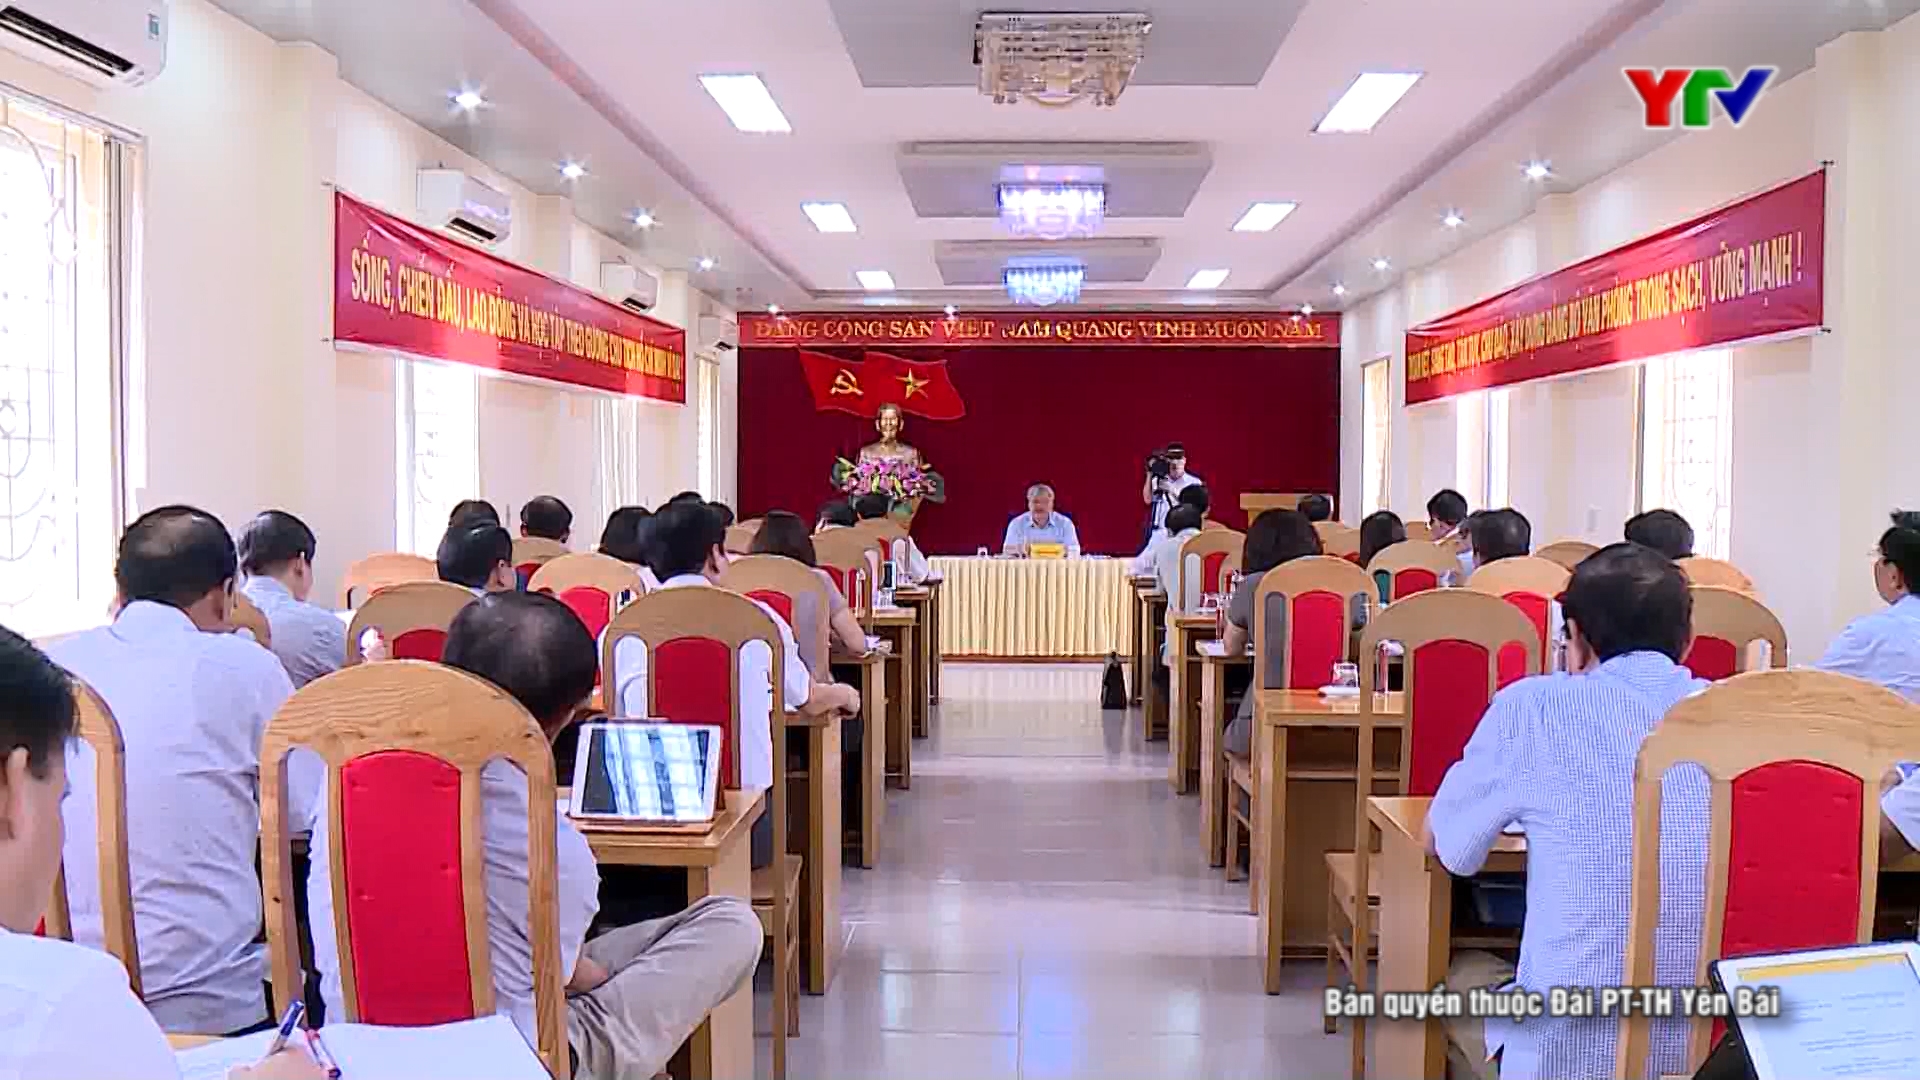 Các đại biểu dự Hội nghị BCH Đảng bộ tỉnh Yên Bái lần thứ 31 (mở rộng) thảo luận tại tổ